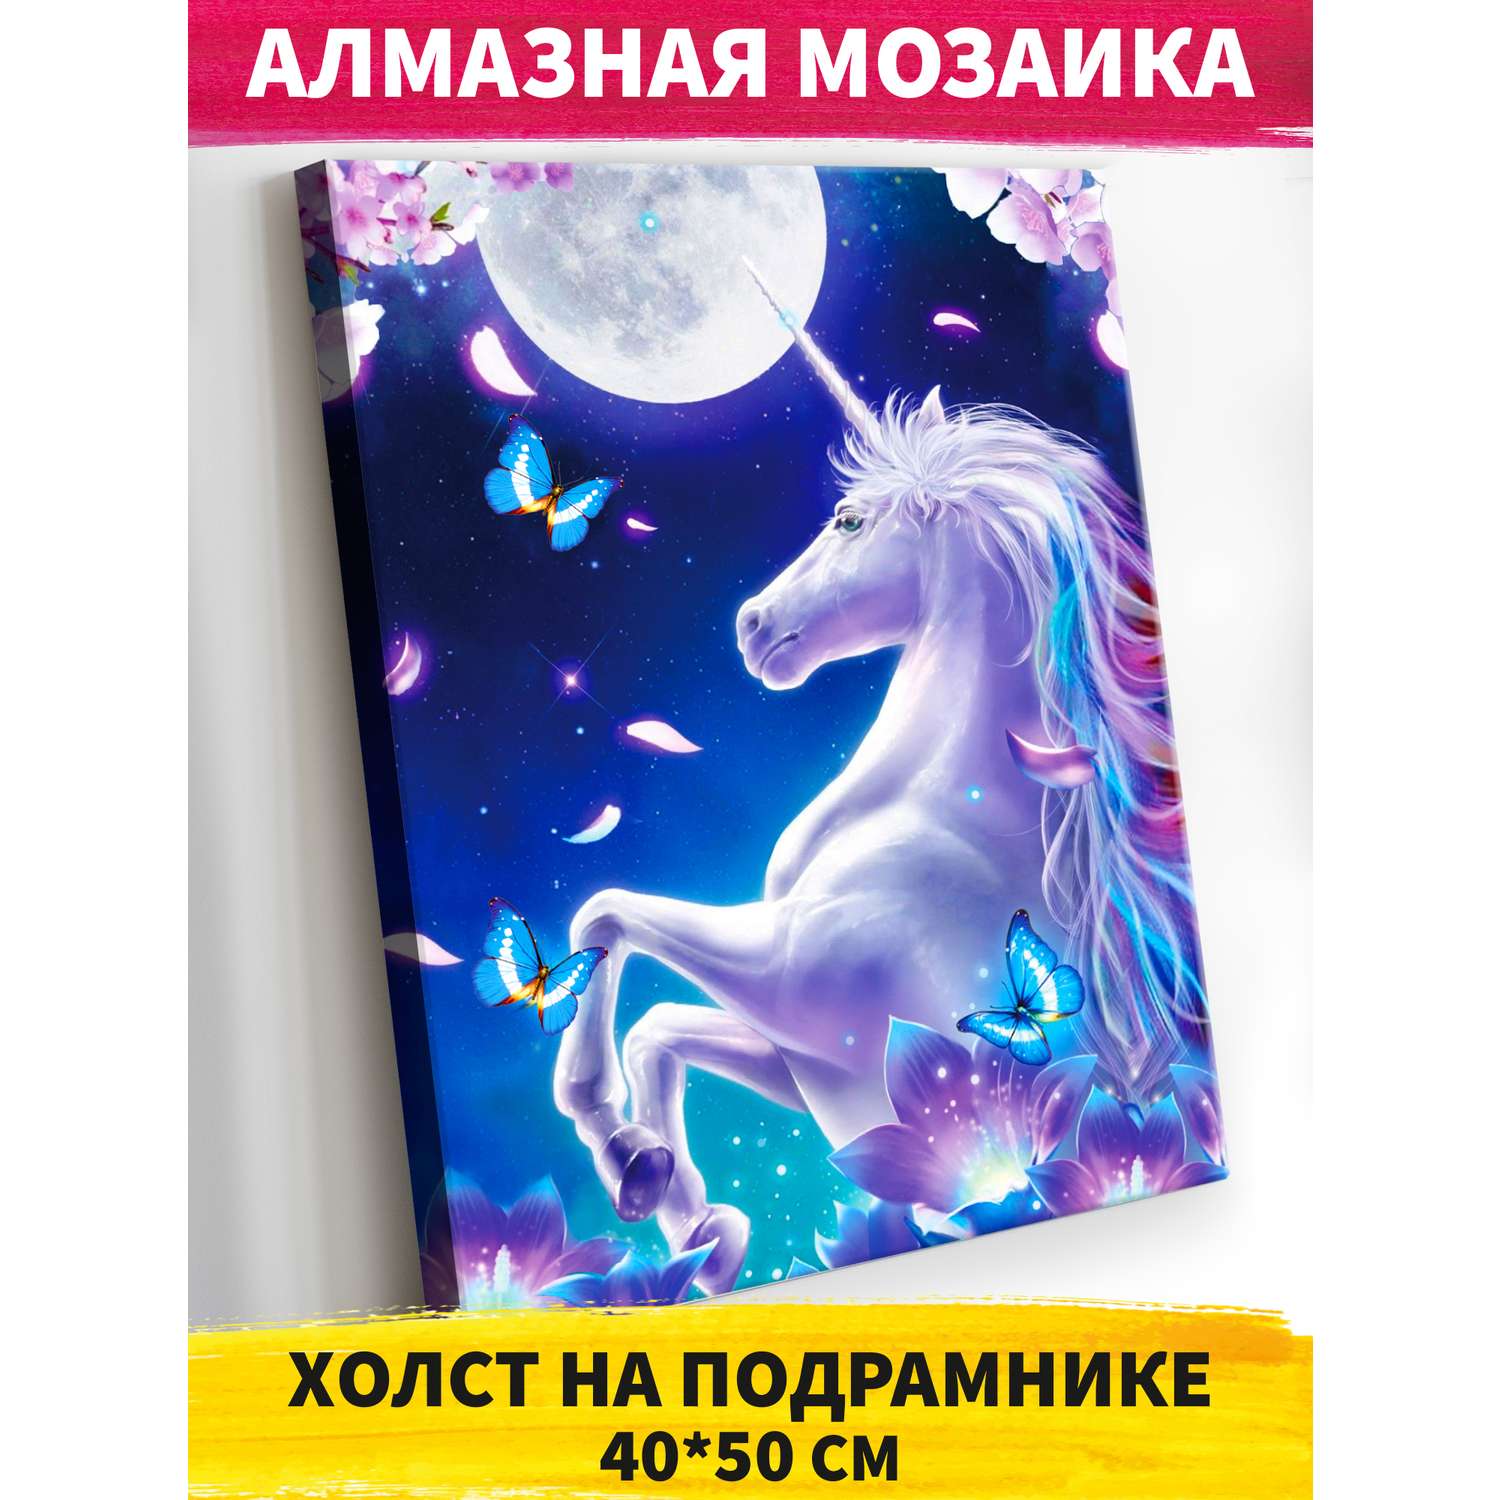 Алмазная мозаика Art on Canvas Единорог в лунном свете холст на подрамнике 40*50 - фото 1